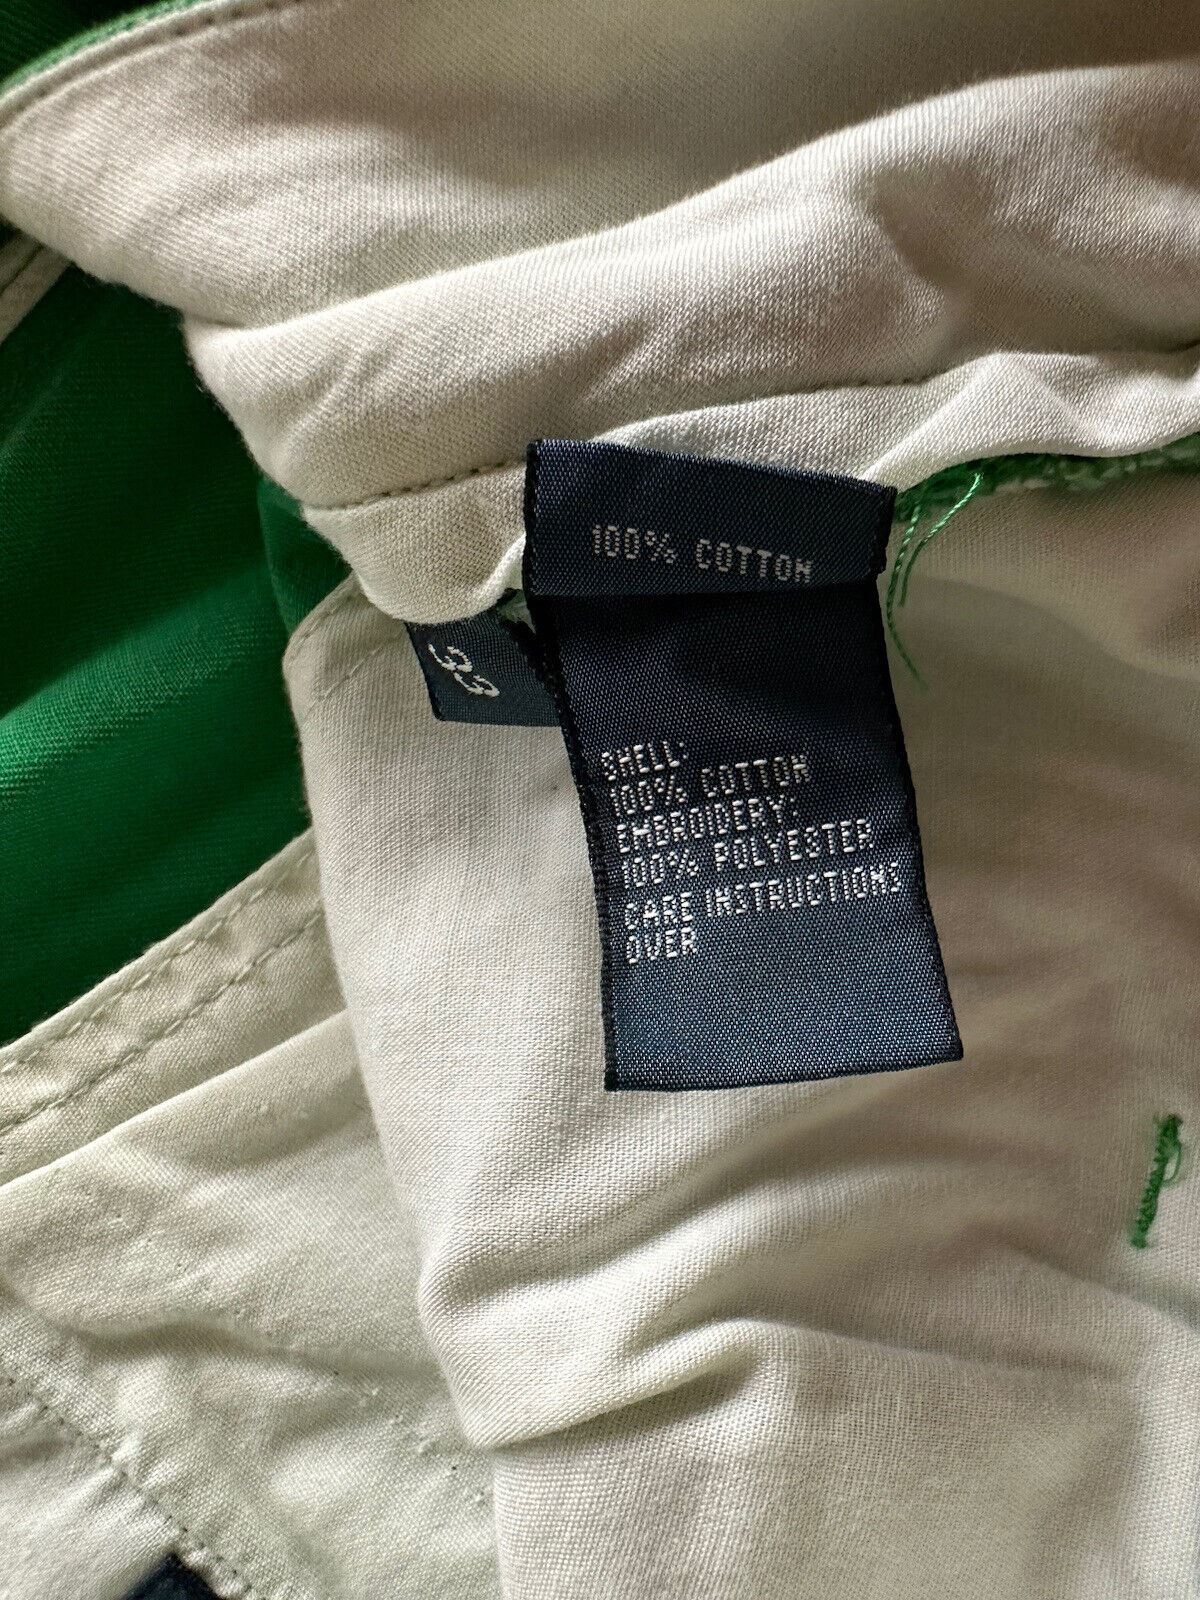 Мужские зеленые шорты классического кроя Polo Ralph Lauren, размер 33, США 